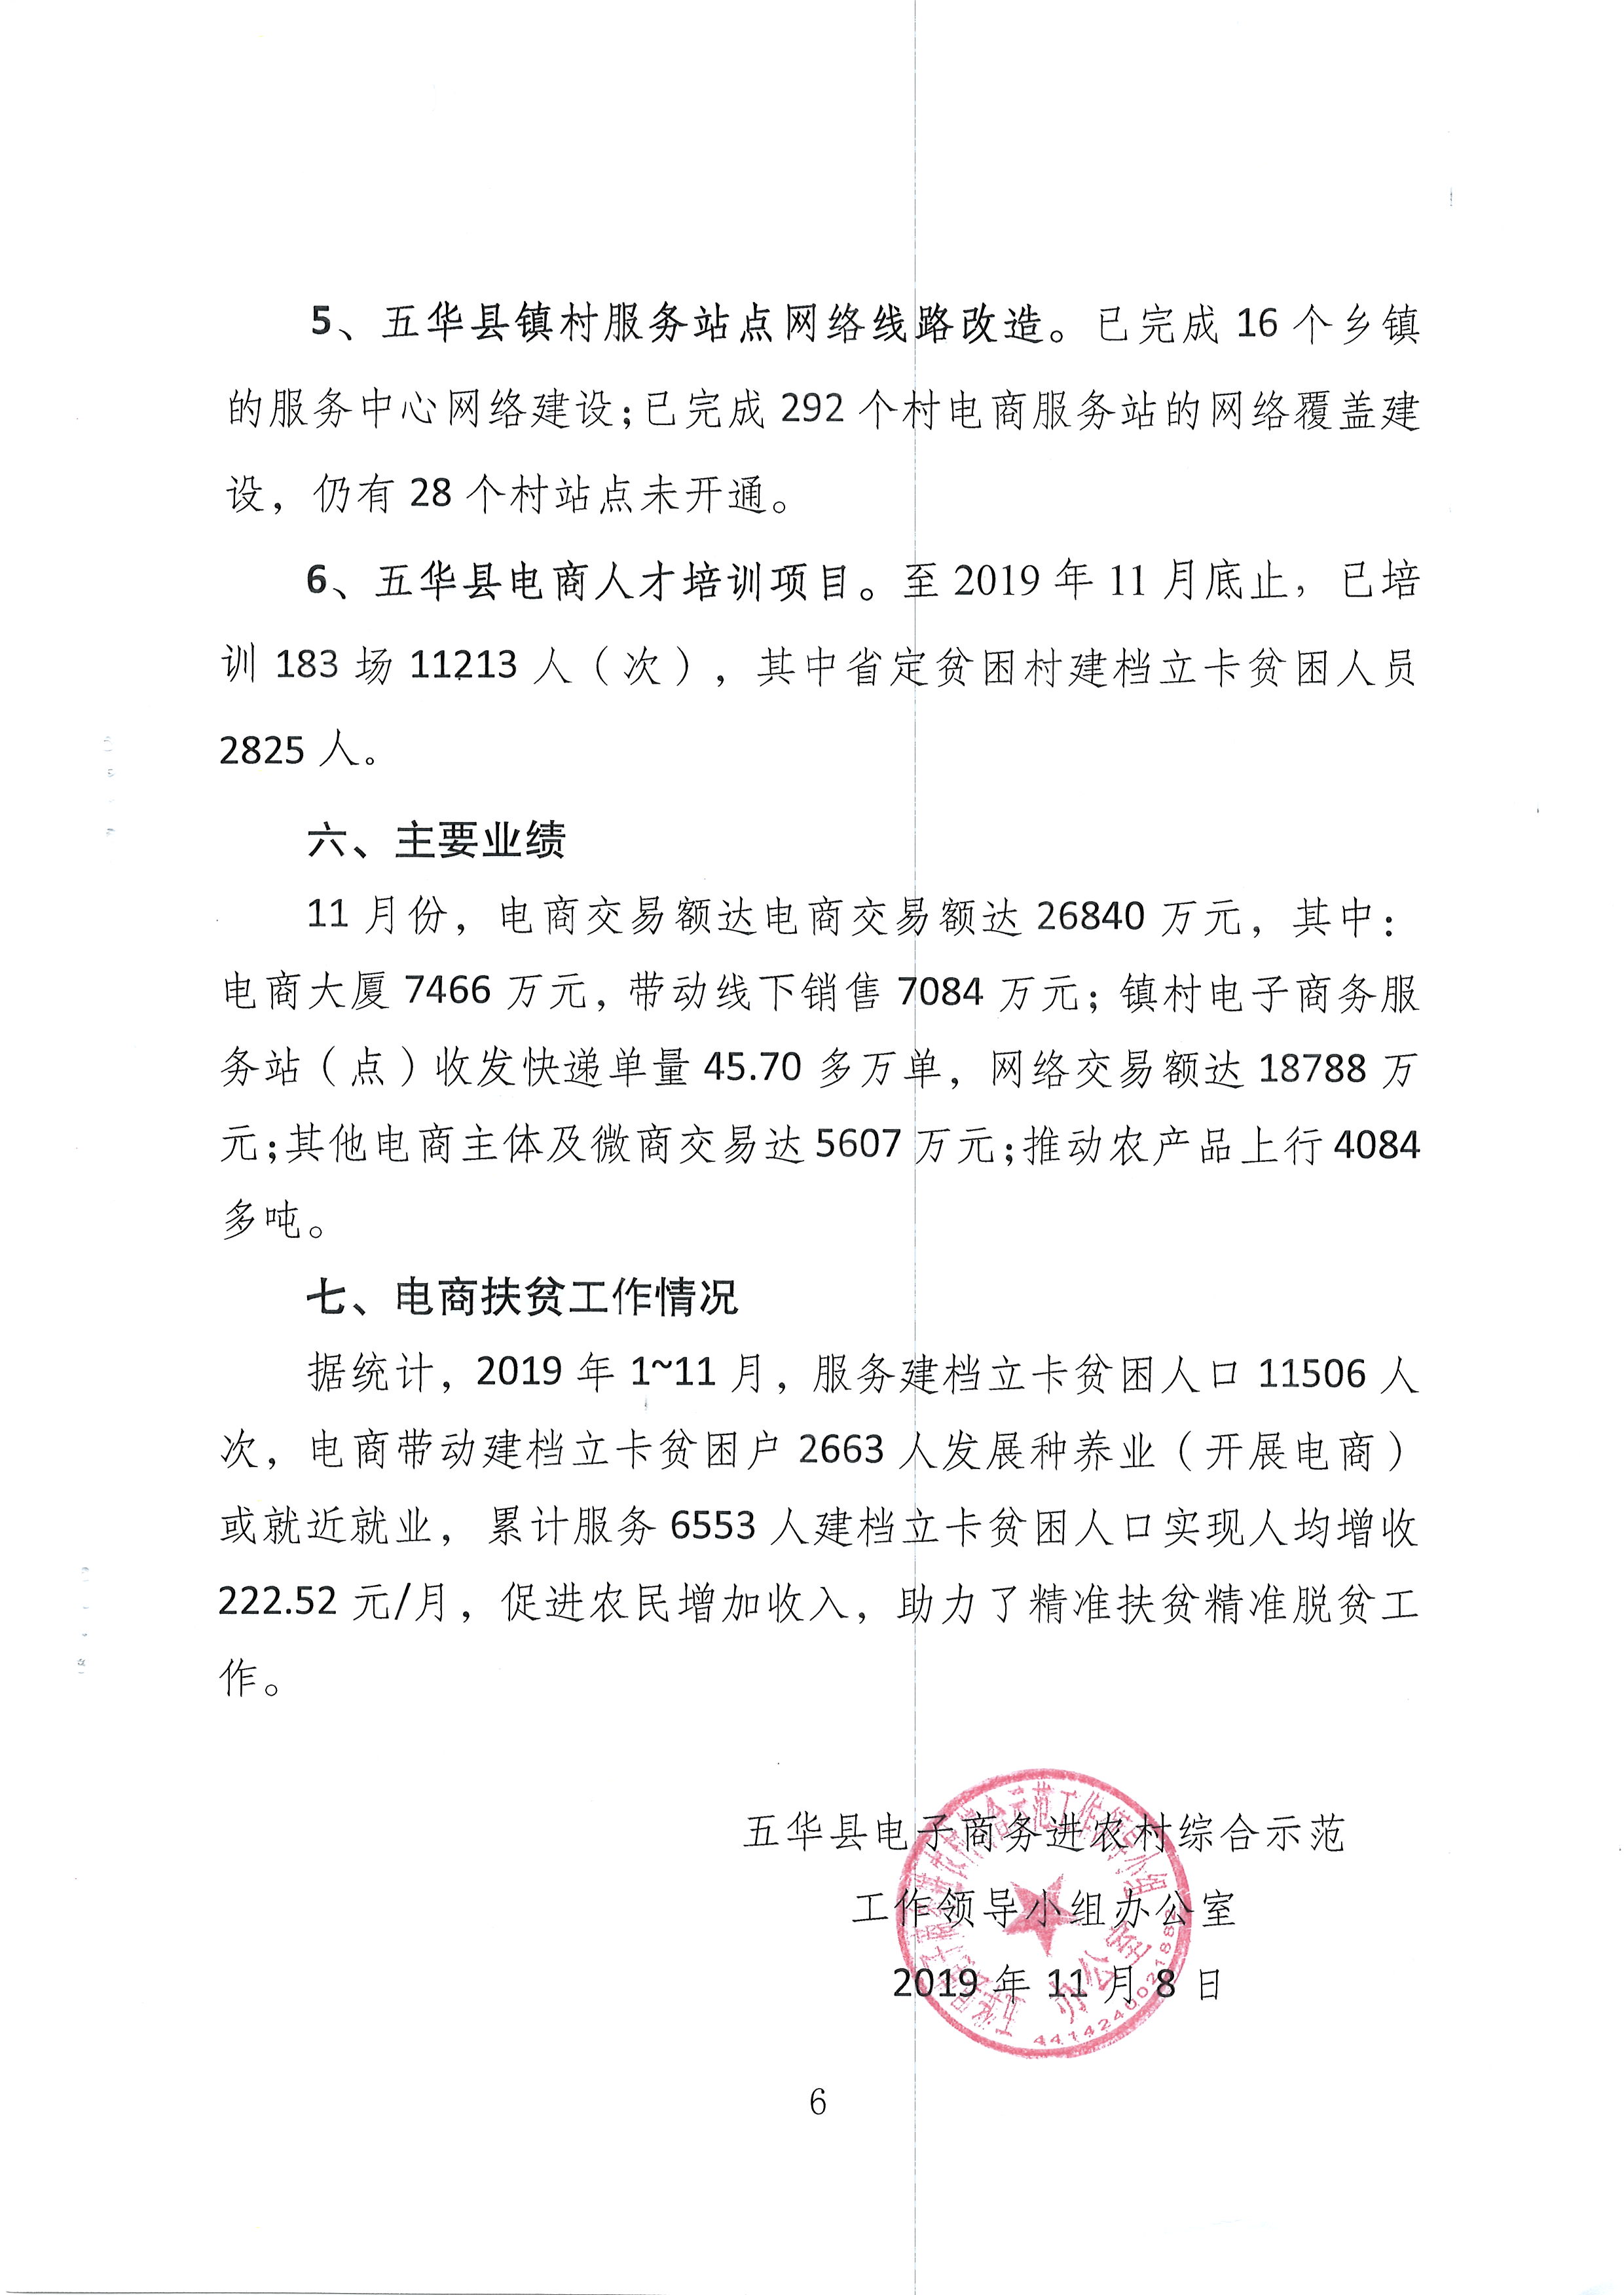 五华县电子商务进农村综合示范项目2019年11月工作推进情况 (6).JPG